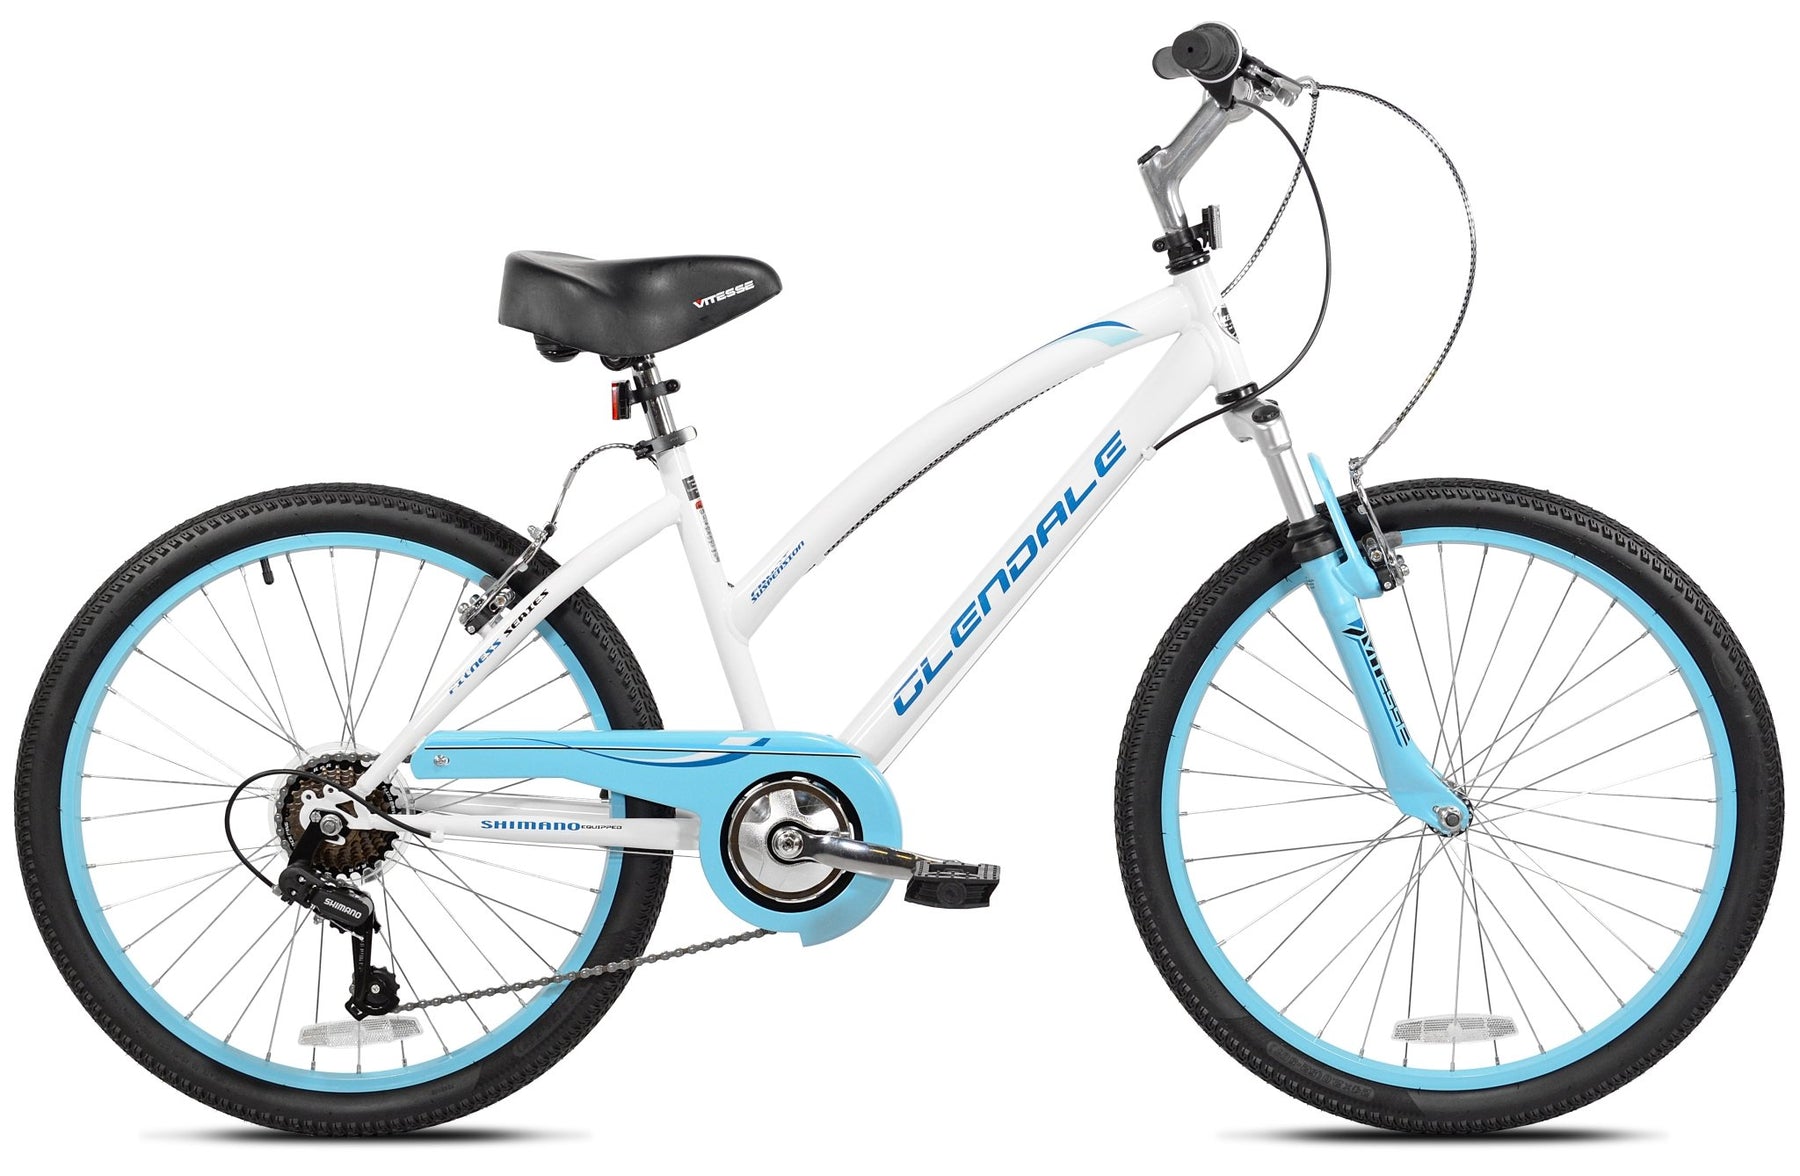 24" Kent Glendale | Hybrid Comfort Bike for Ages 8+